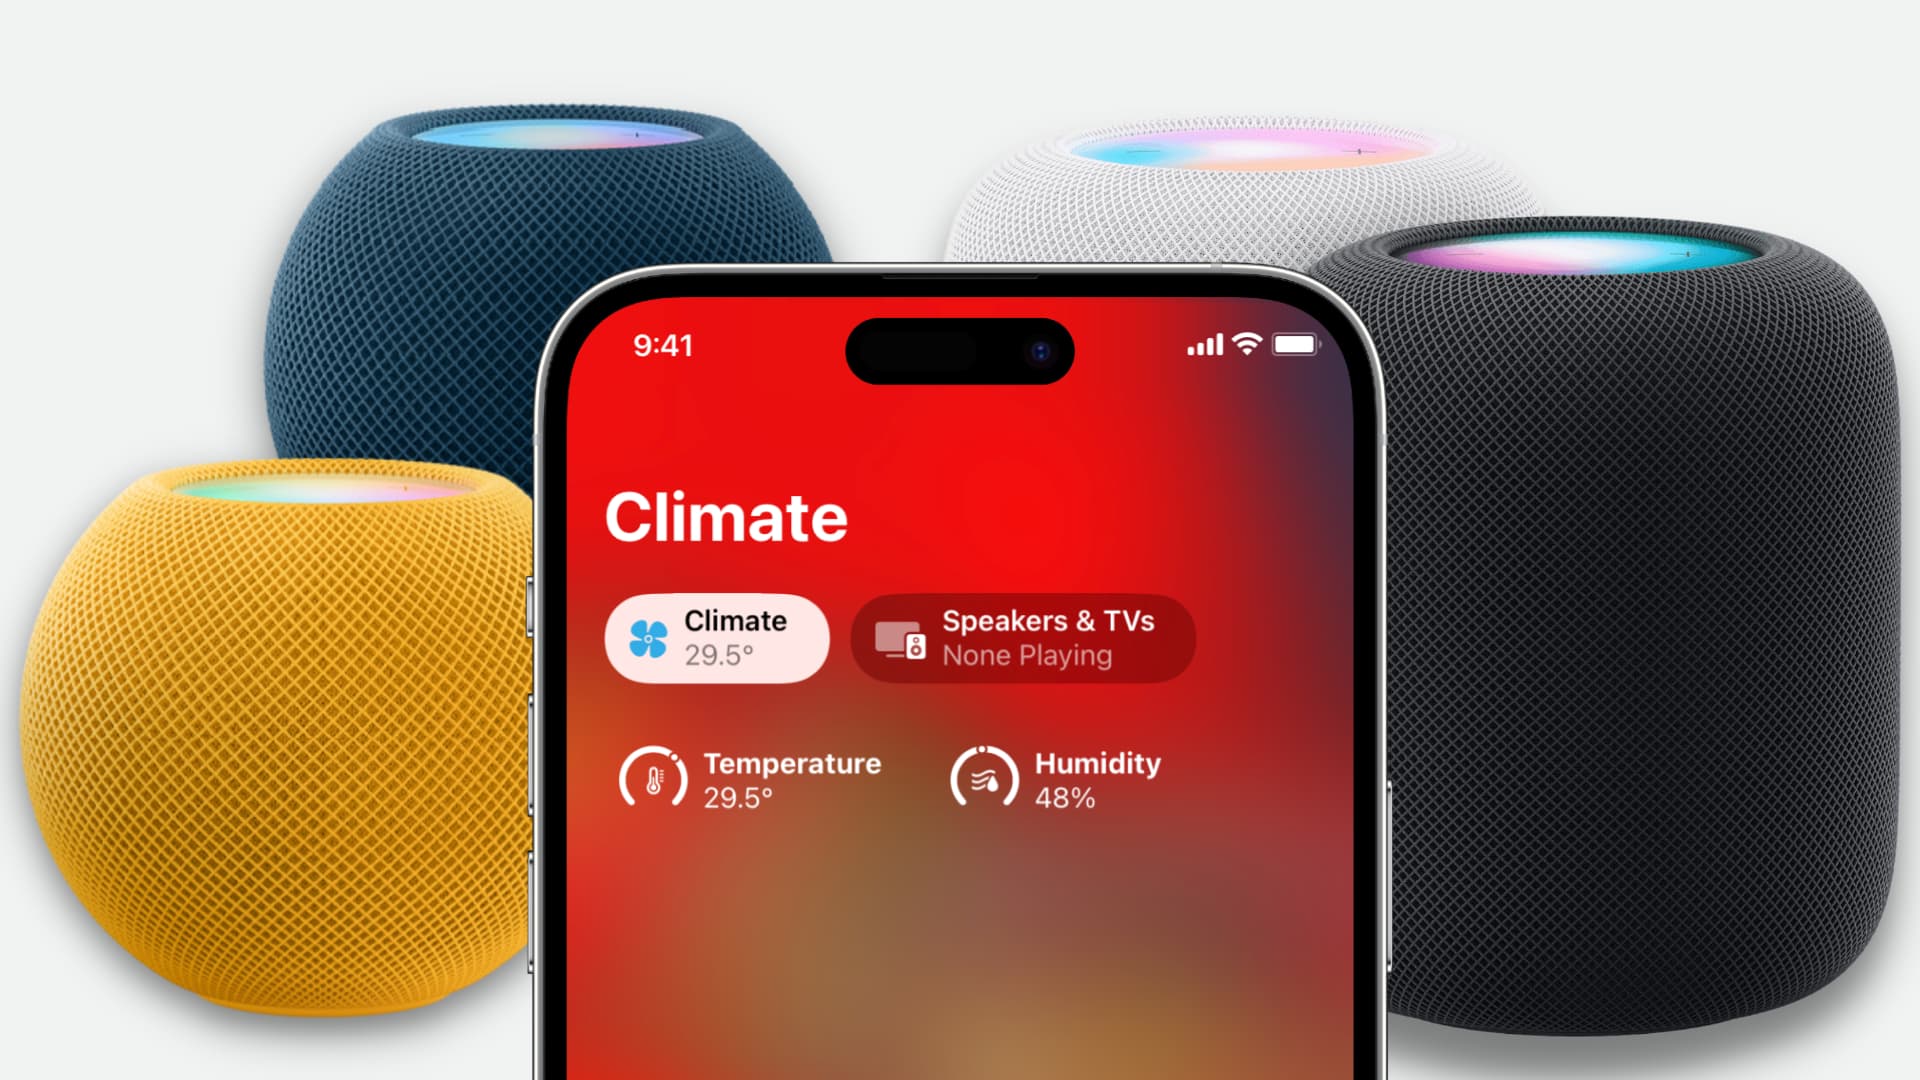 HomePod mini dan HomePod generasi ke-2 menampilkan suhu dan kelembapan di iPhone